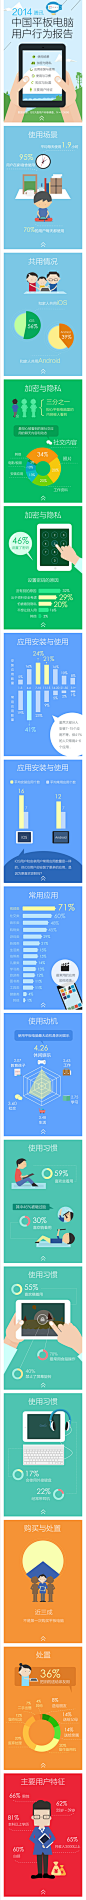 信息图，数据可视化，信息可视化，图表新闻，图表，2014年中国平板电脑用户行为报告 -from 腾讯ISUX [http://1806969598.qzone.qq.com]